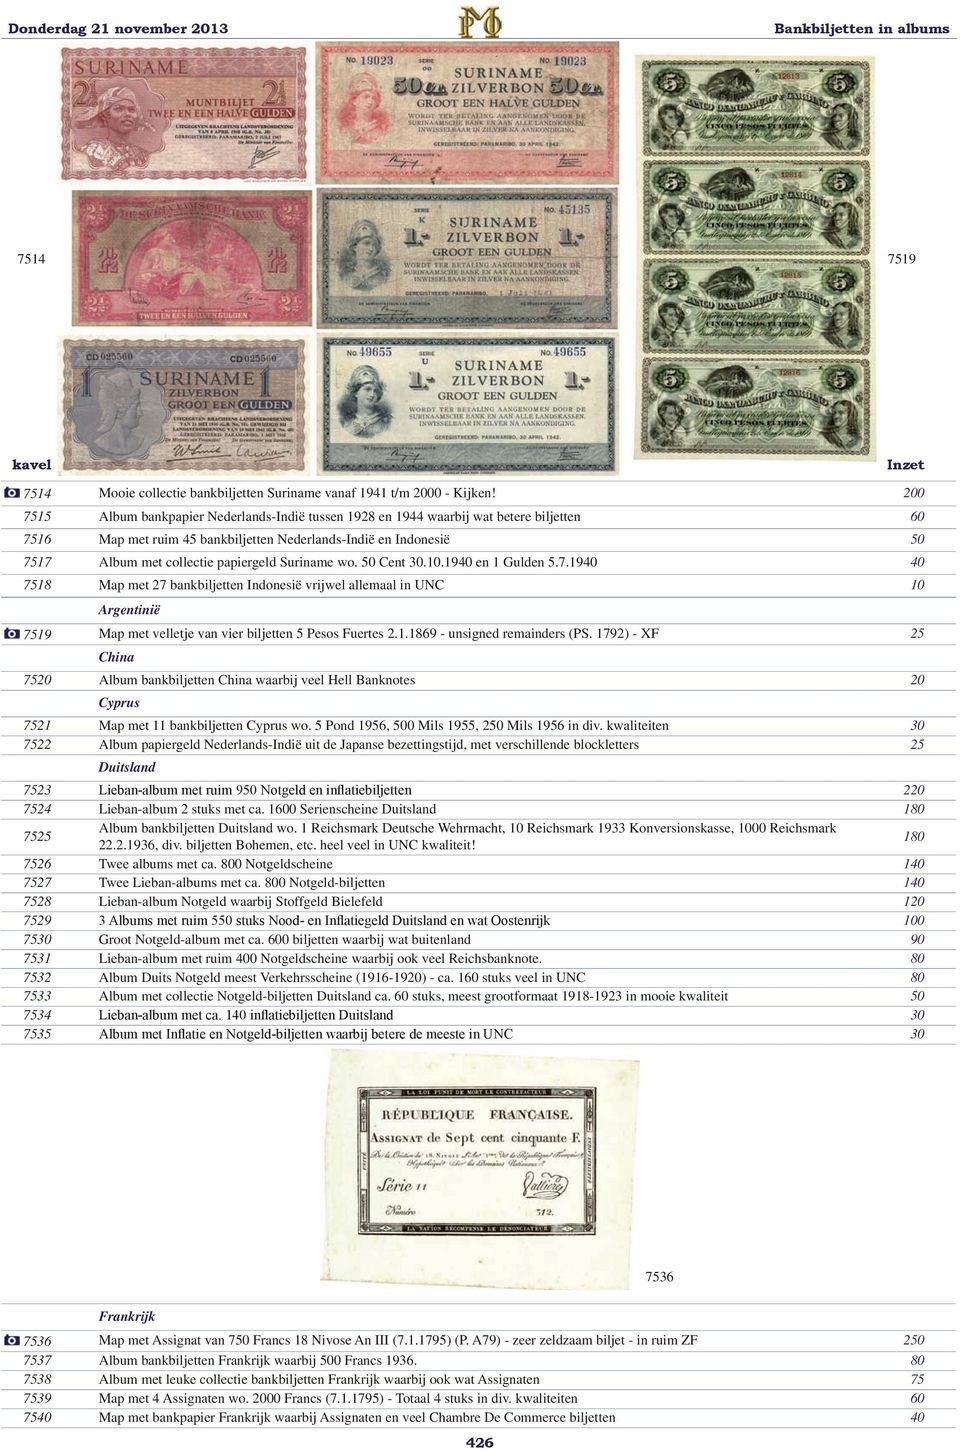 Suriname wo. 50 Cent 30.10.1940 en 1 Gulden 5.7.1940 40 7518 Map met 27 bankbiljetten Indonesië vrijwel allemaal in UNC 10 Argentinië 7519 Map met velletje van vier biljetten 5 Pesos Fuertes 2.1.1869 - unsigned remainders (PS.